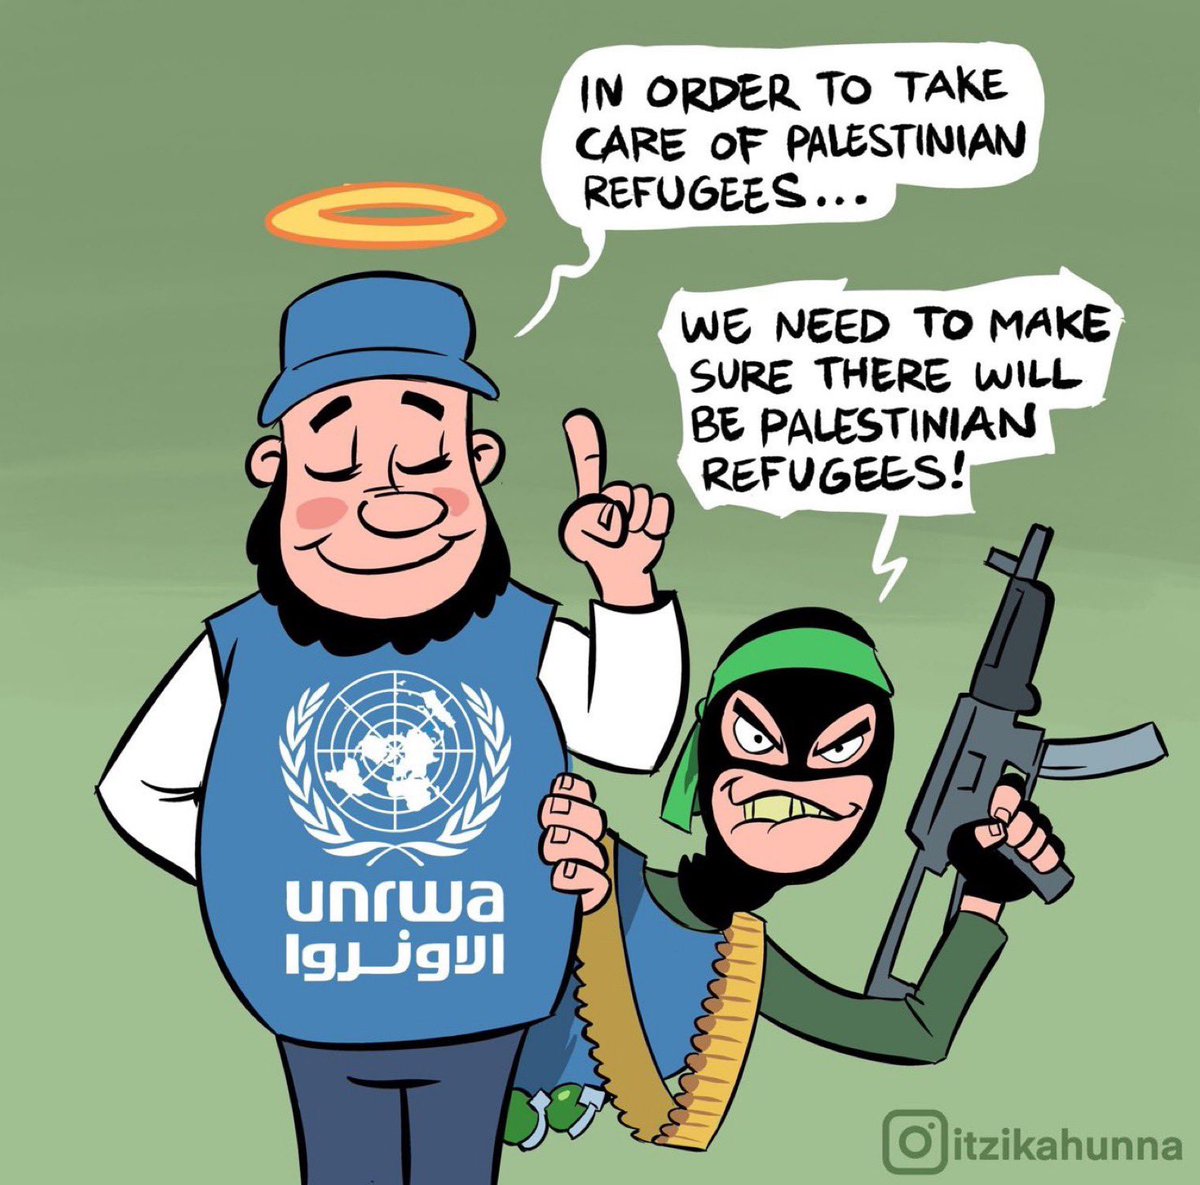 @UNRWA @CSIS